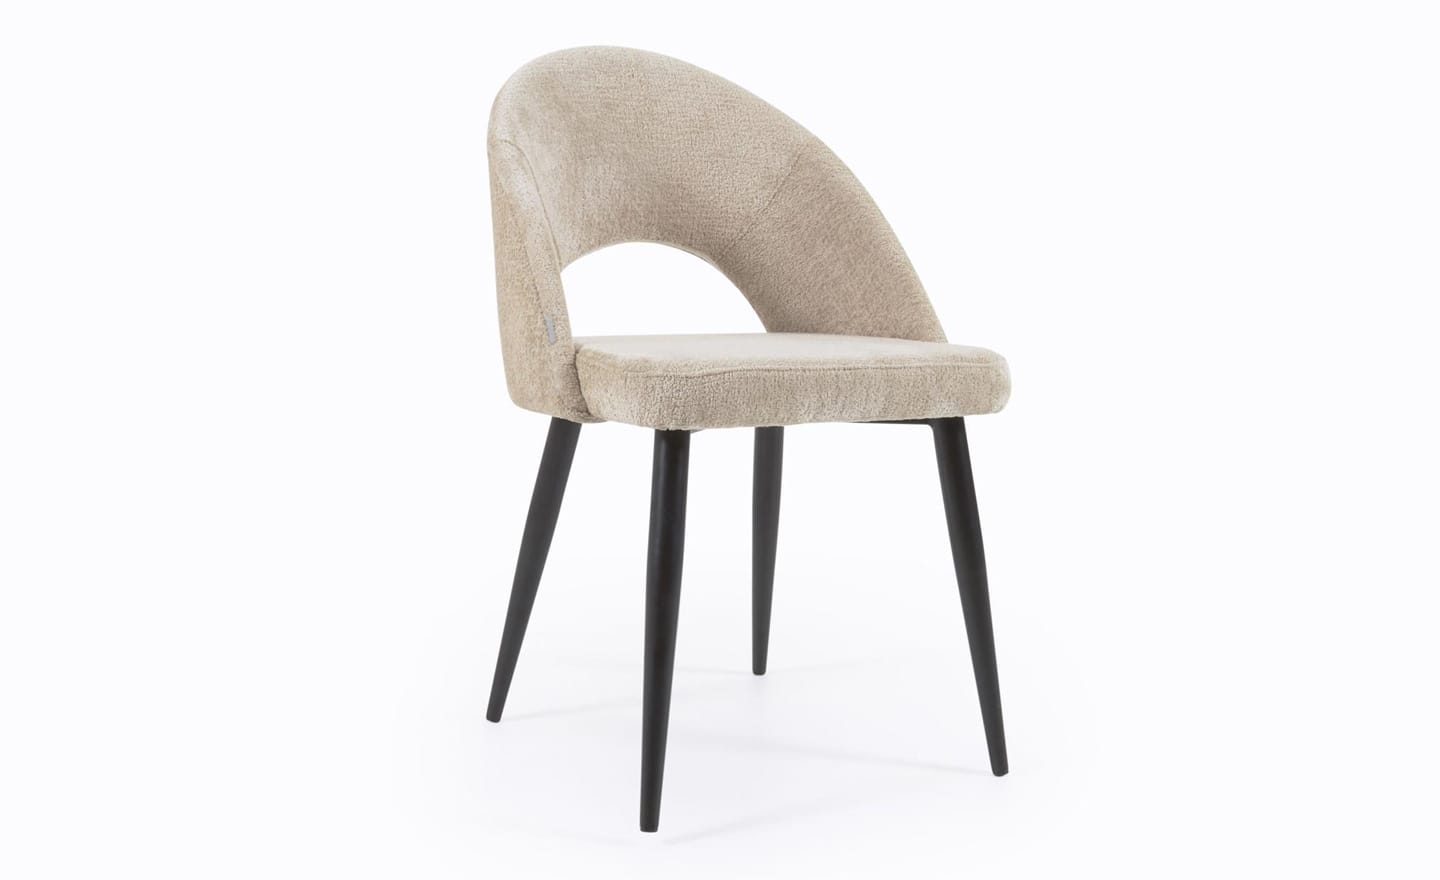 Cadeira Mael Chenille Bege, estofada com tecido chenille aveludado na cor bege. Pernas de metal preto para um design moderno e elegante.